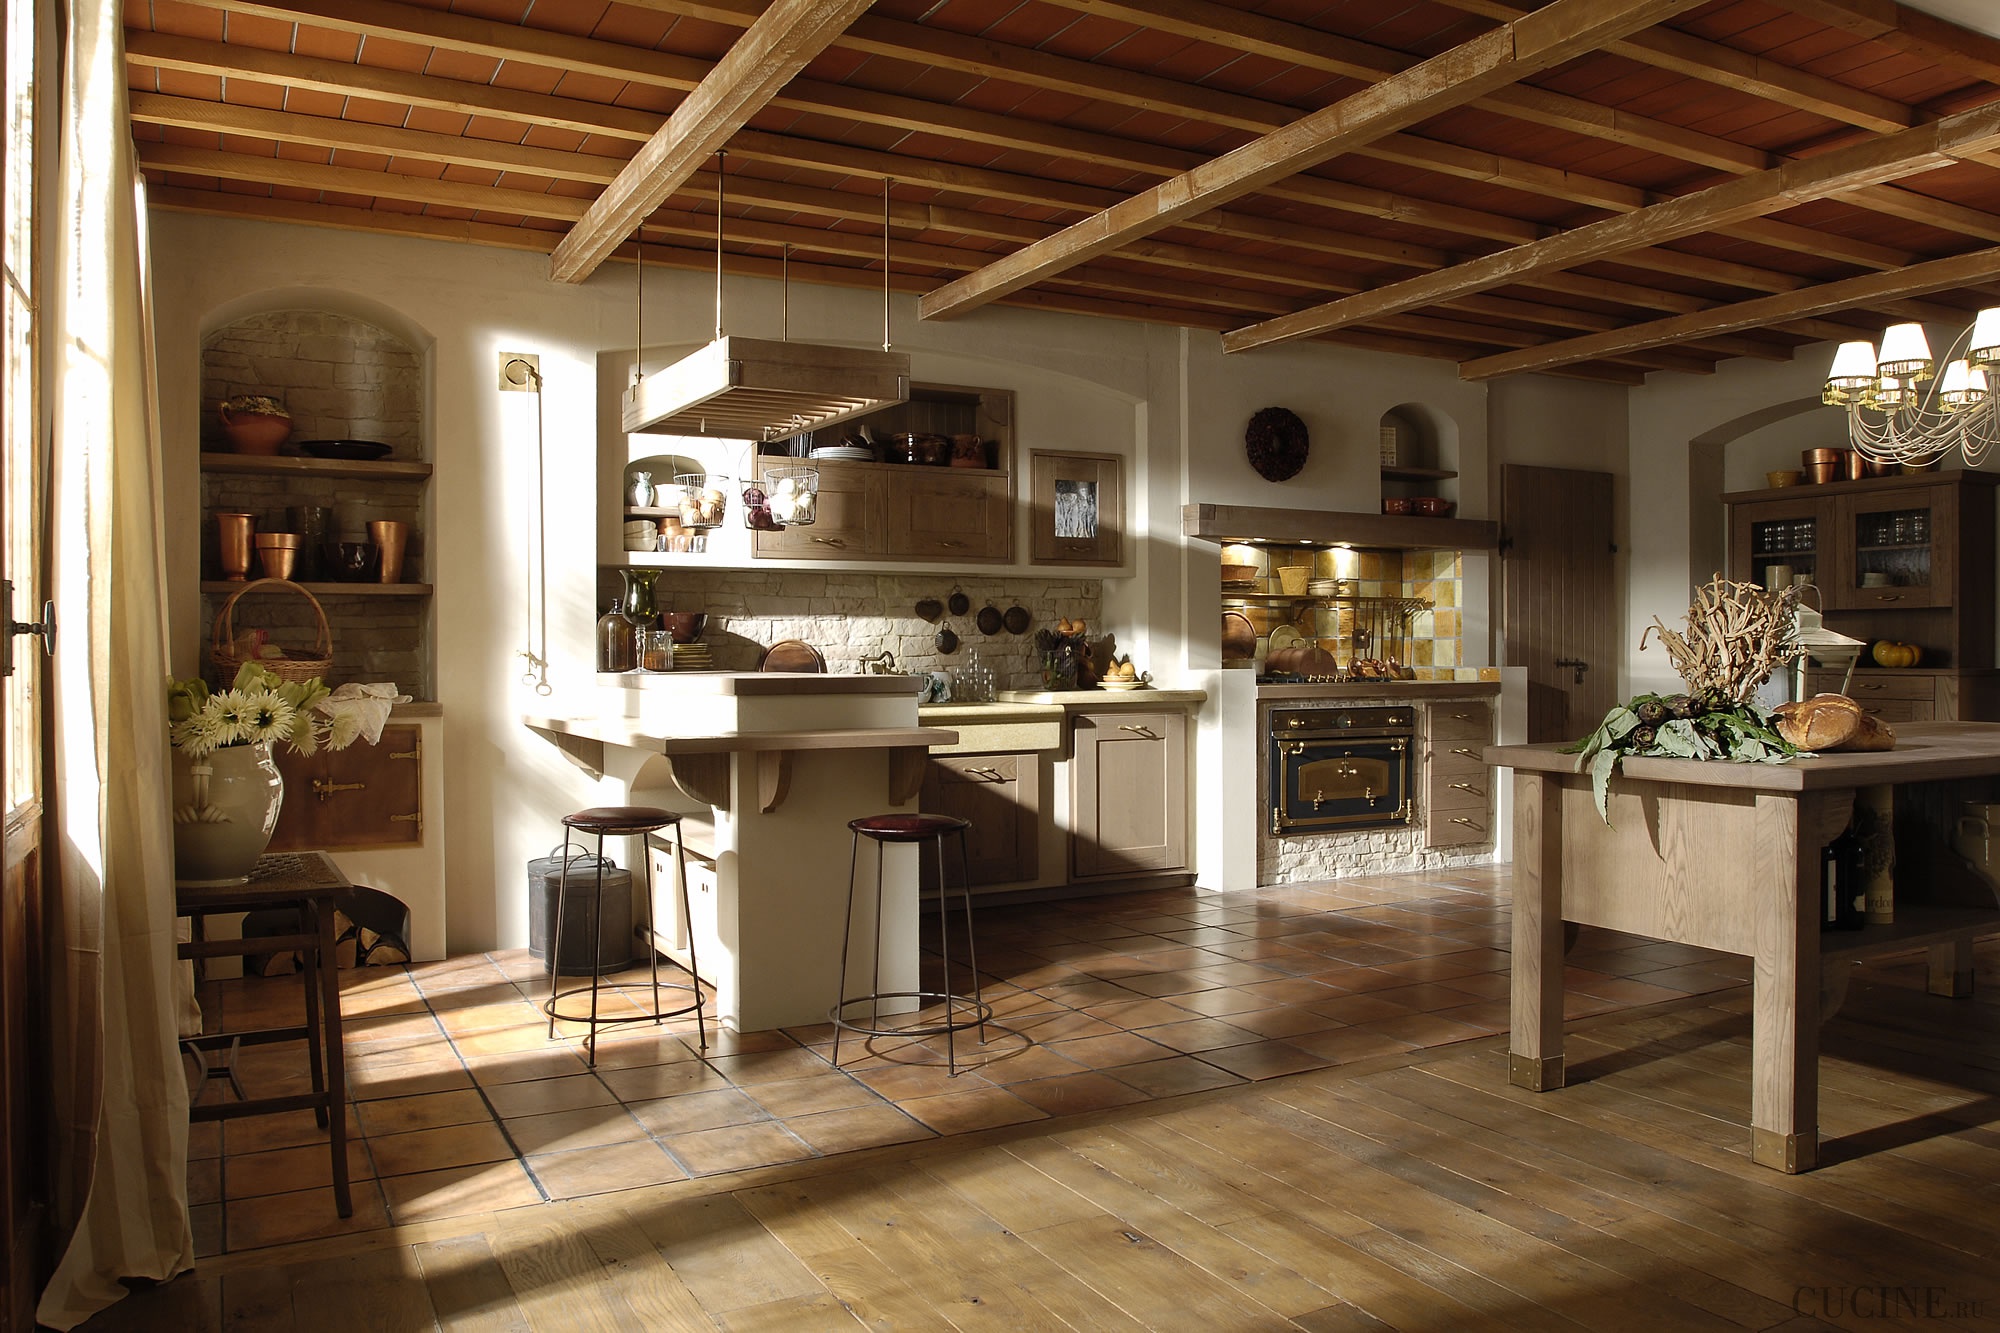 Итальянский стиль на просторах кухни